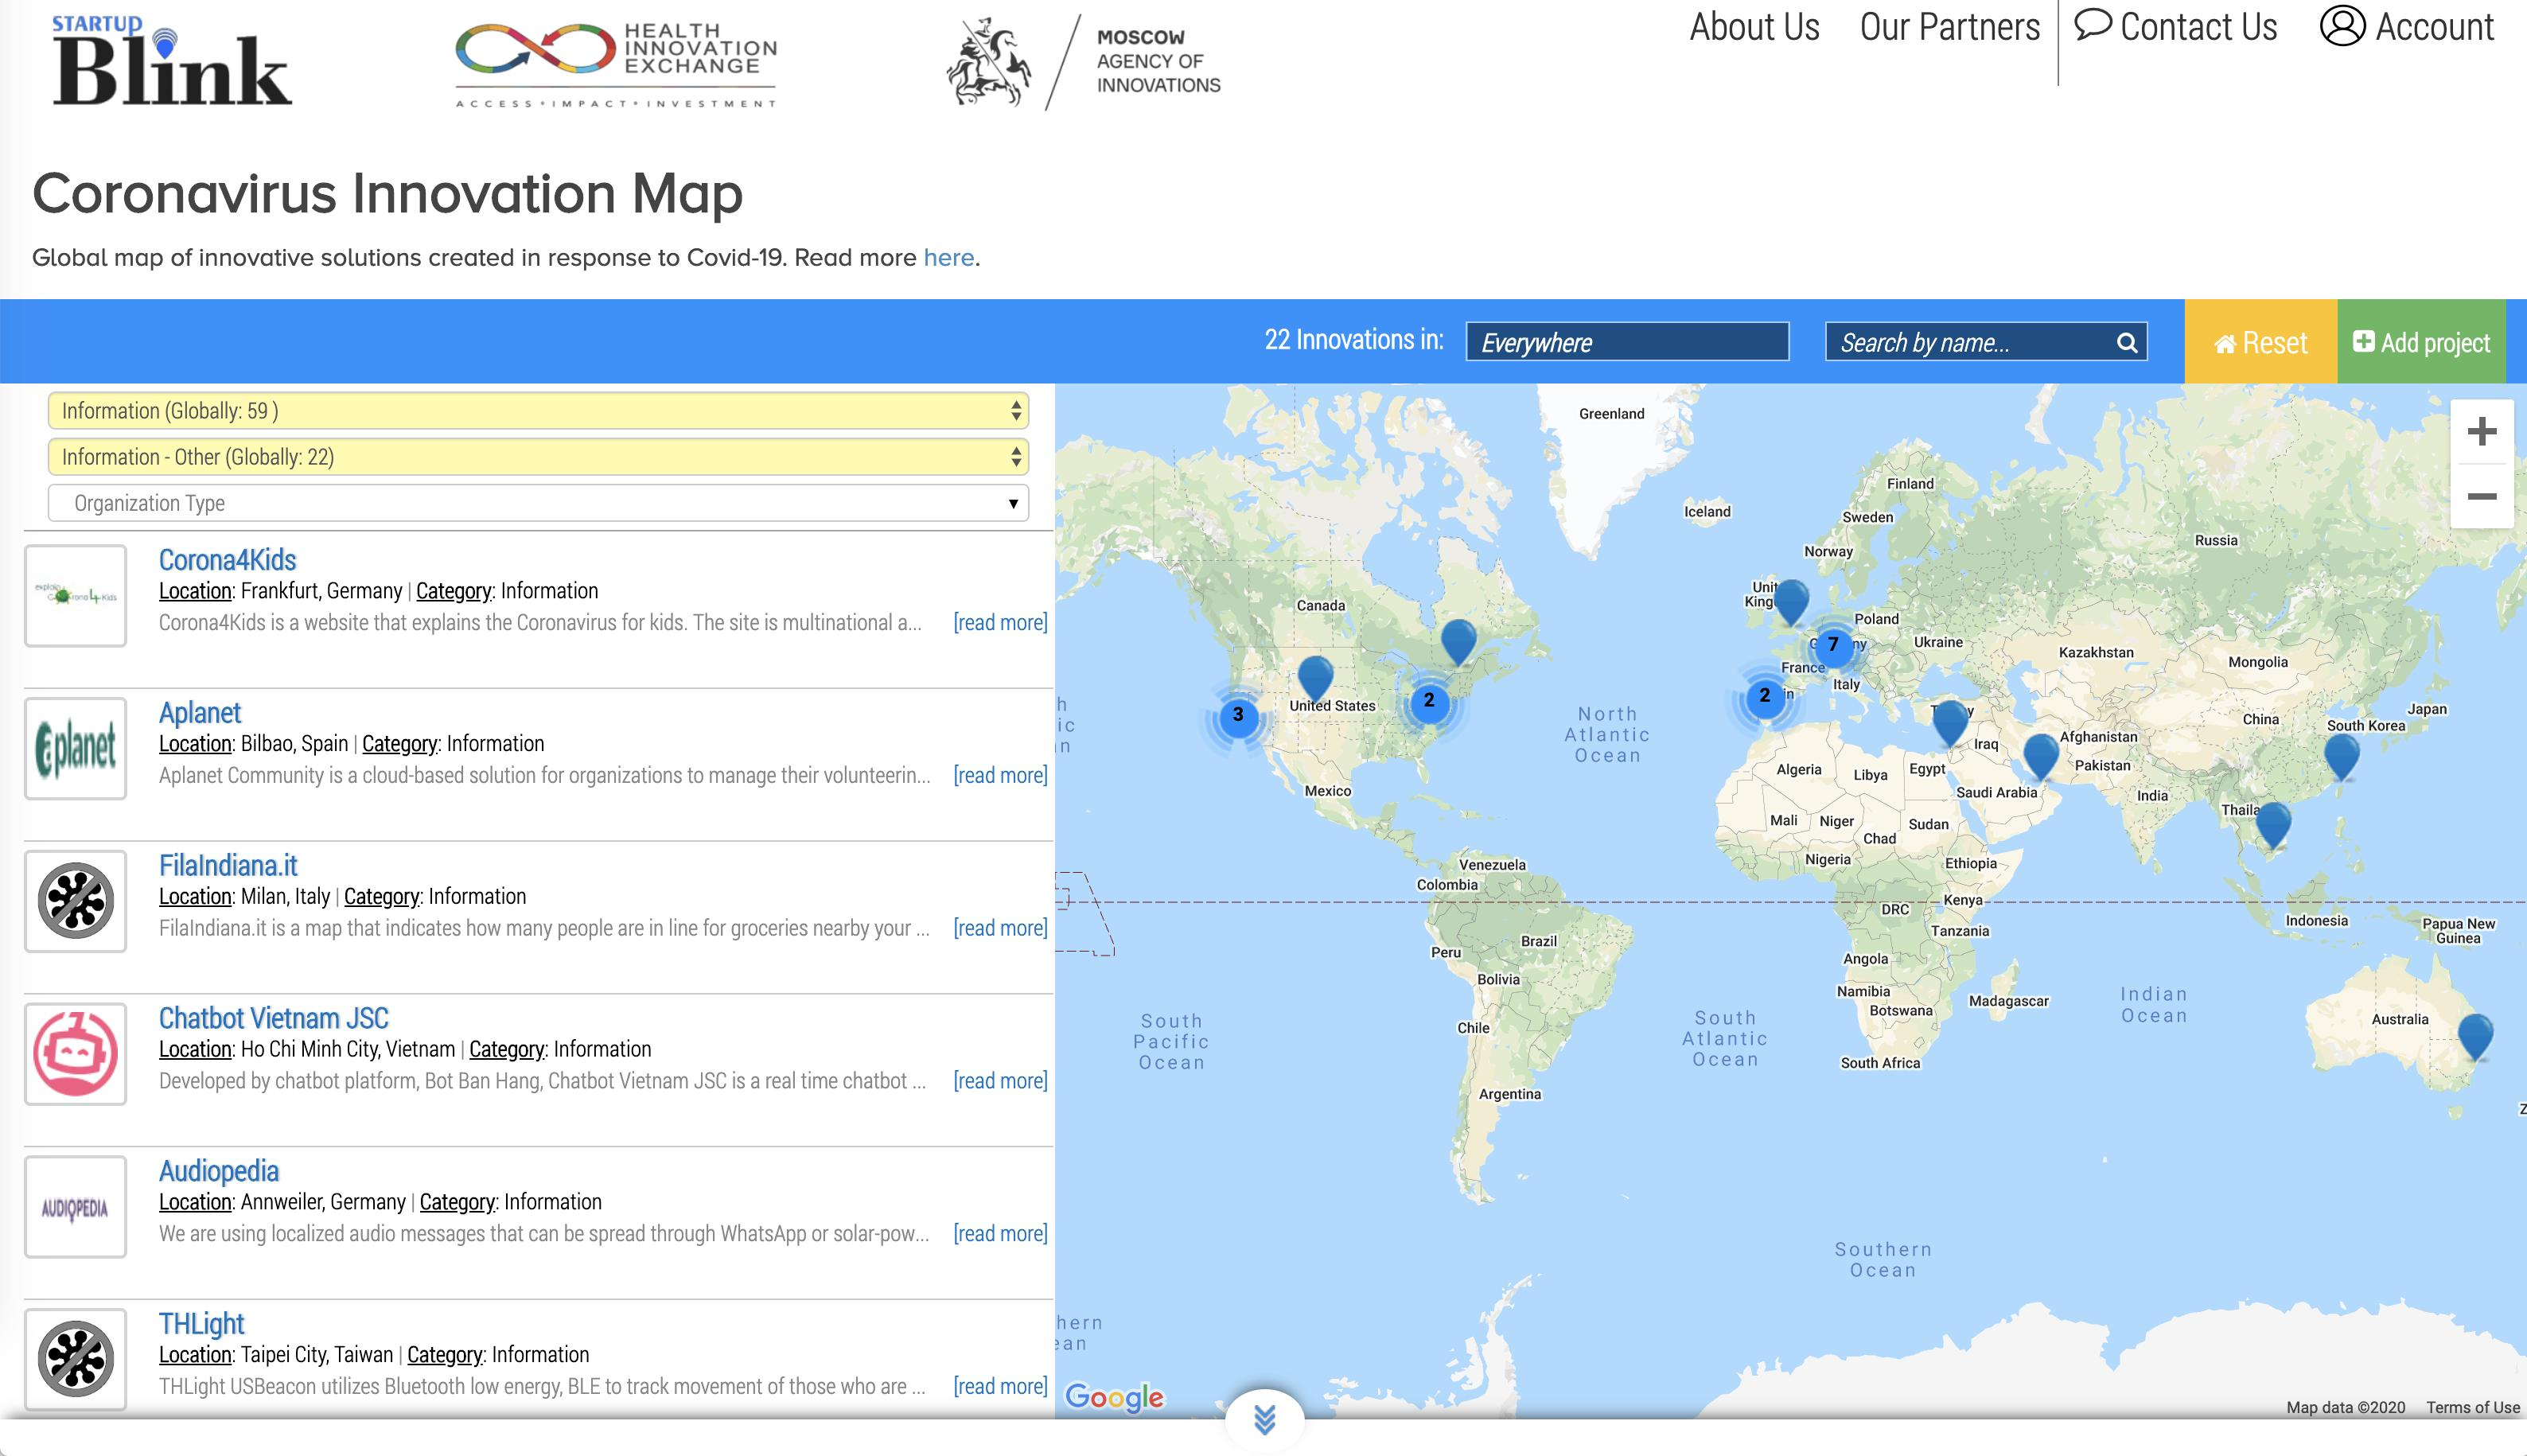 Bot Bán Hàng với tên gọi Chatbot Vietnam được ghi danh trên bản đồ thế giới "Global Map of Coronavirus Innovations" về phòng chống Covid-19.